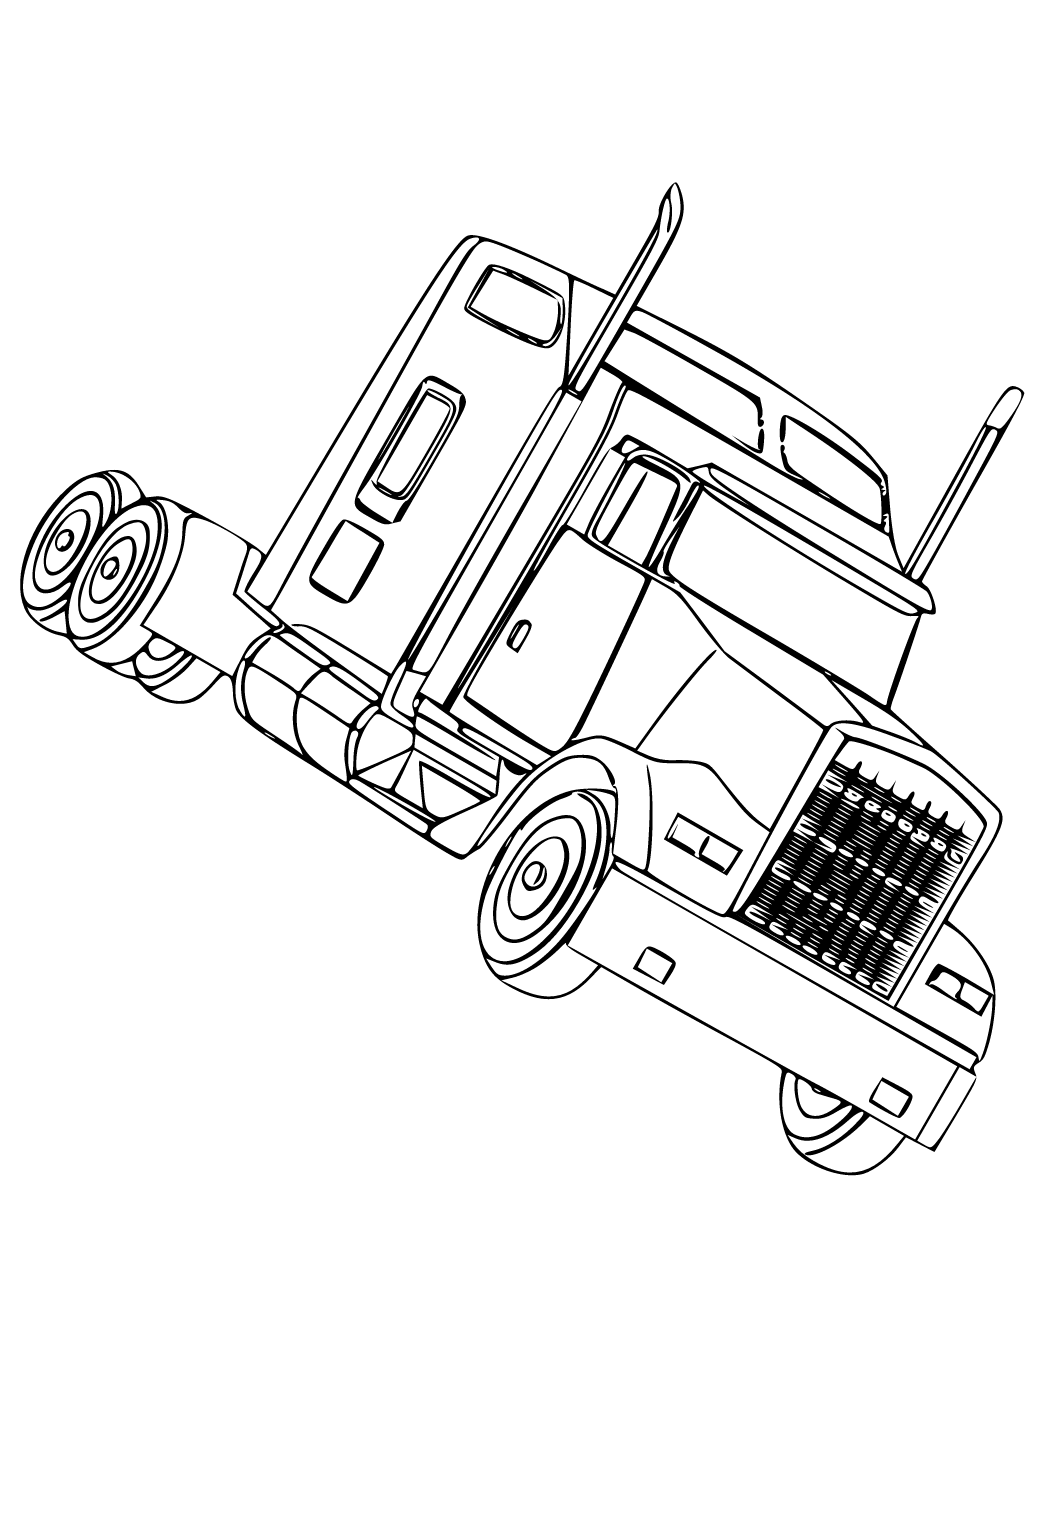 Semi-Vrachtwagen